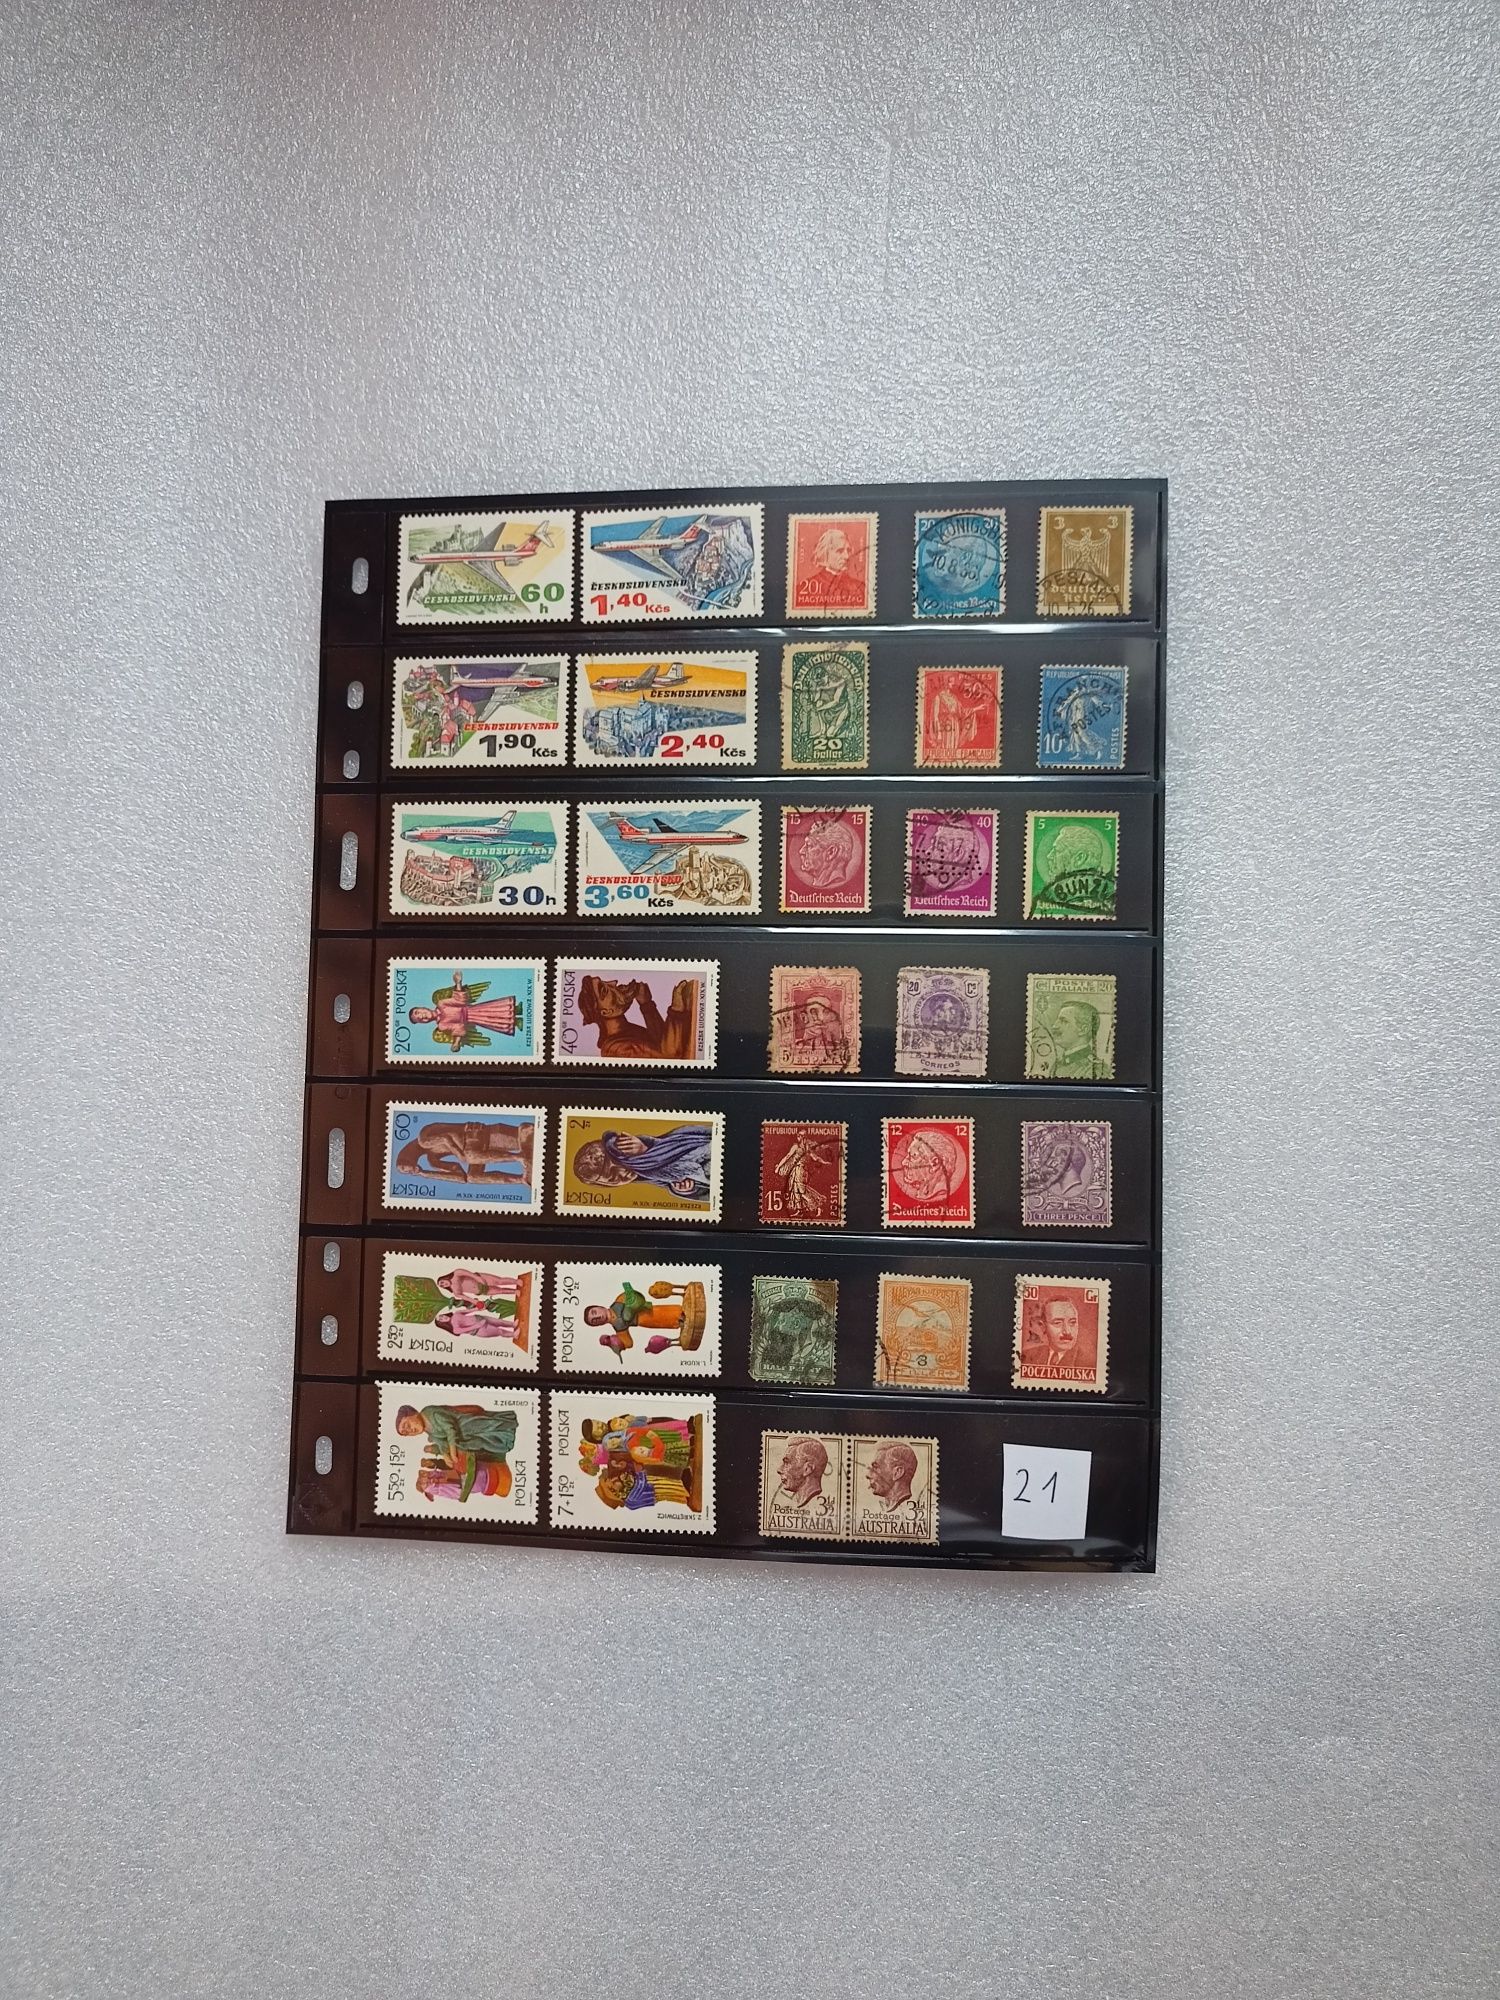 Znaczki pocztowe  zestaw 21 + karta Leuchtturm Optima

Sprzedam widocz